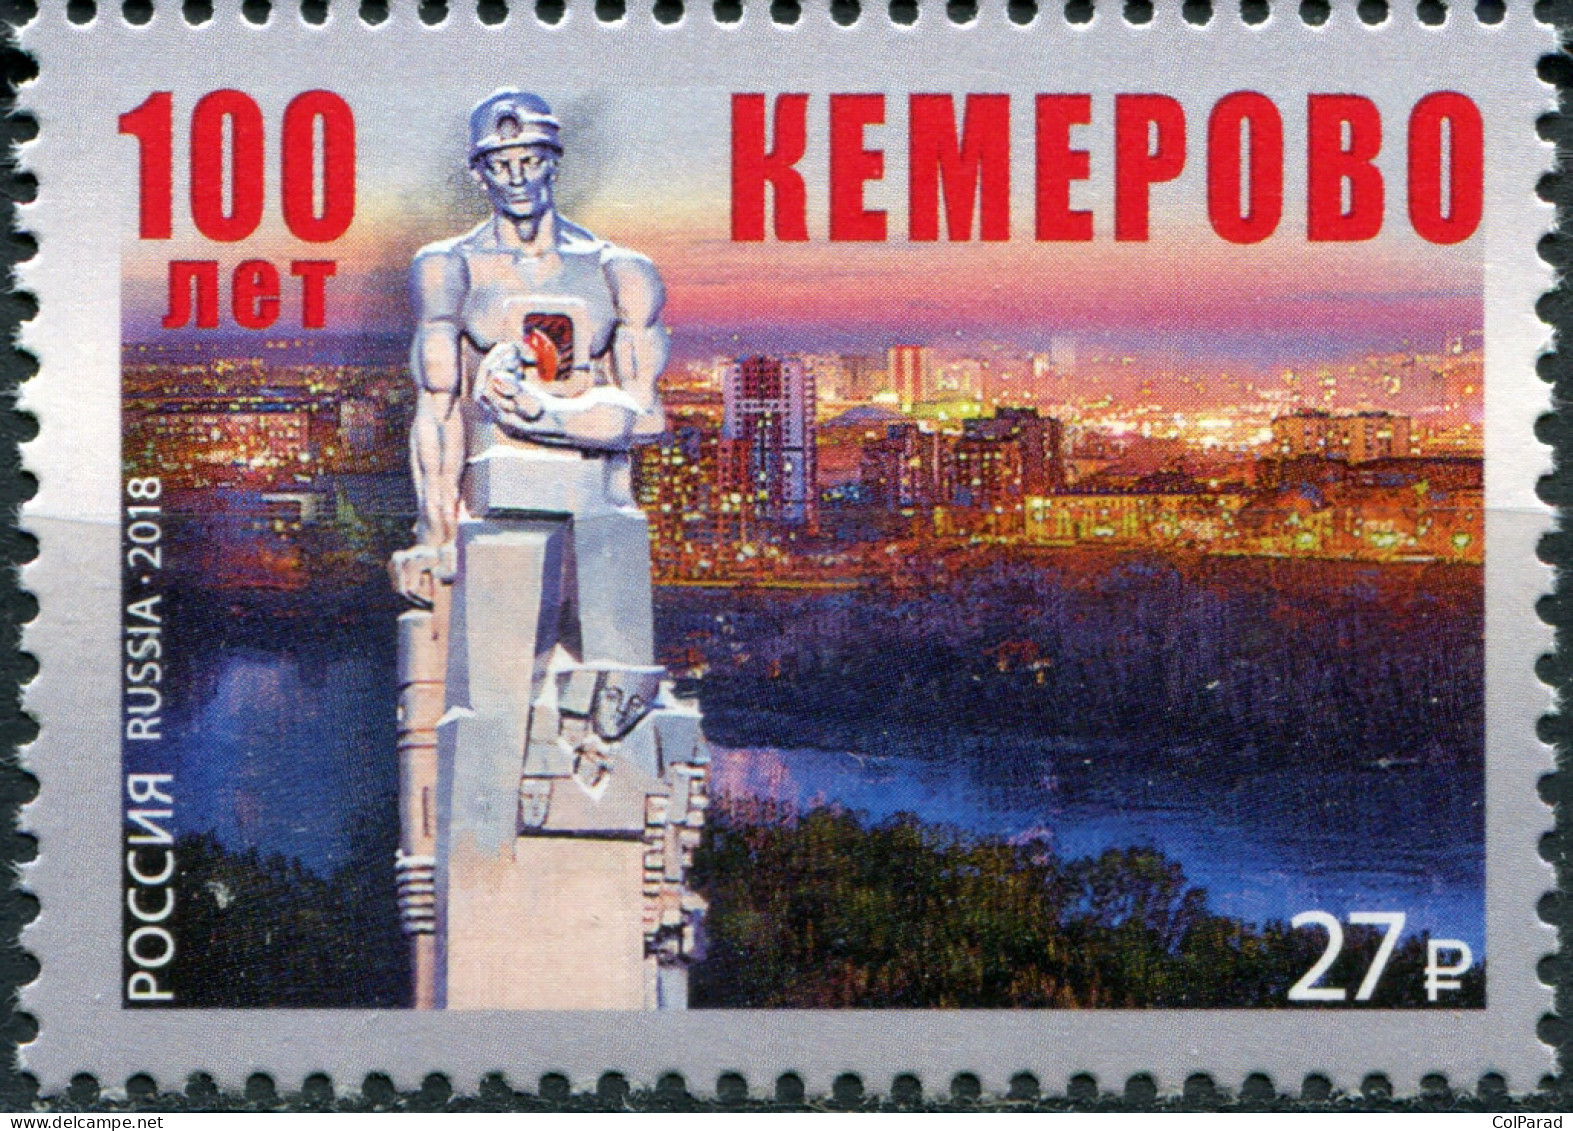 RUSSIA - 2018 -  STAMP MNH ** - Centenary Of City Of Kemerovo - Ongebruikt